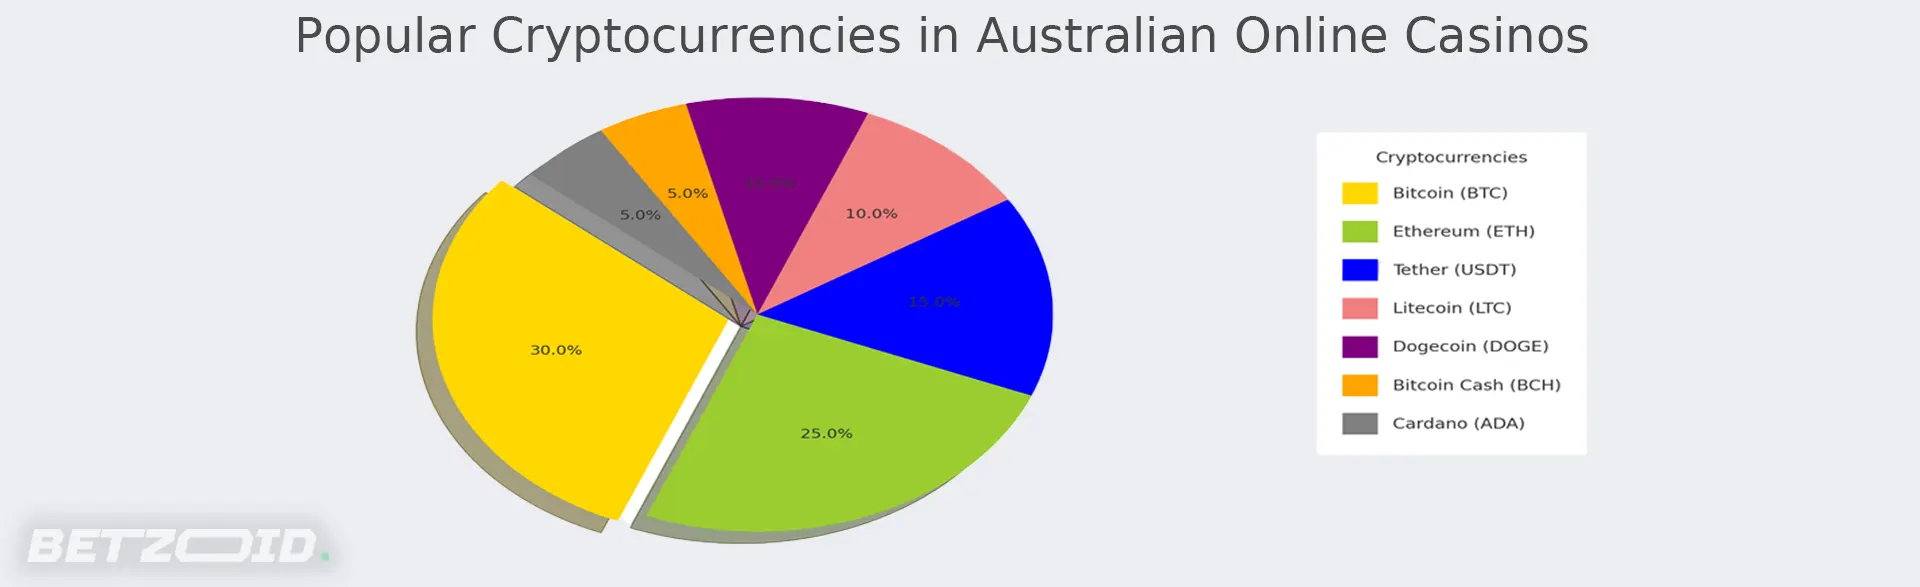 Popular cryptocurrencies in Australian online casinos.